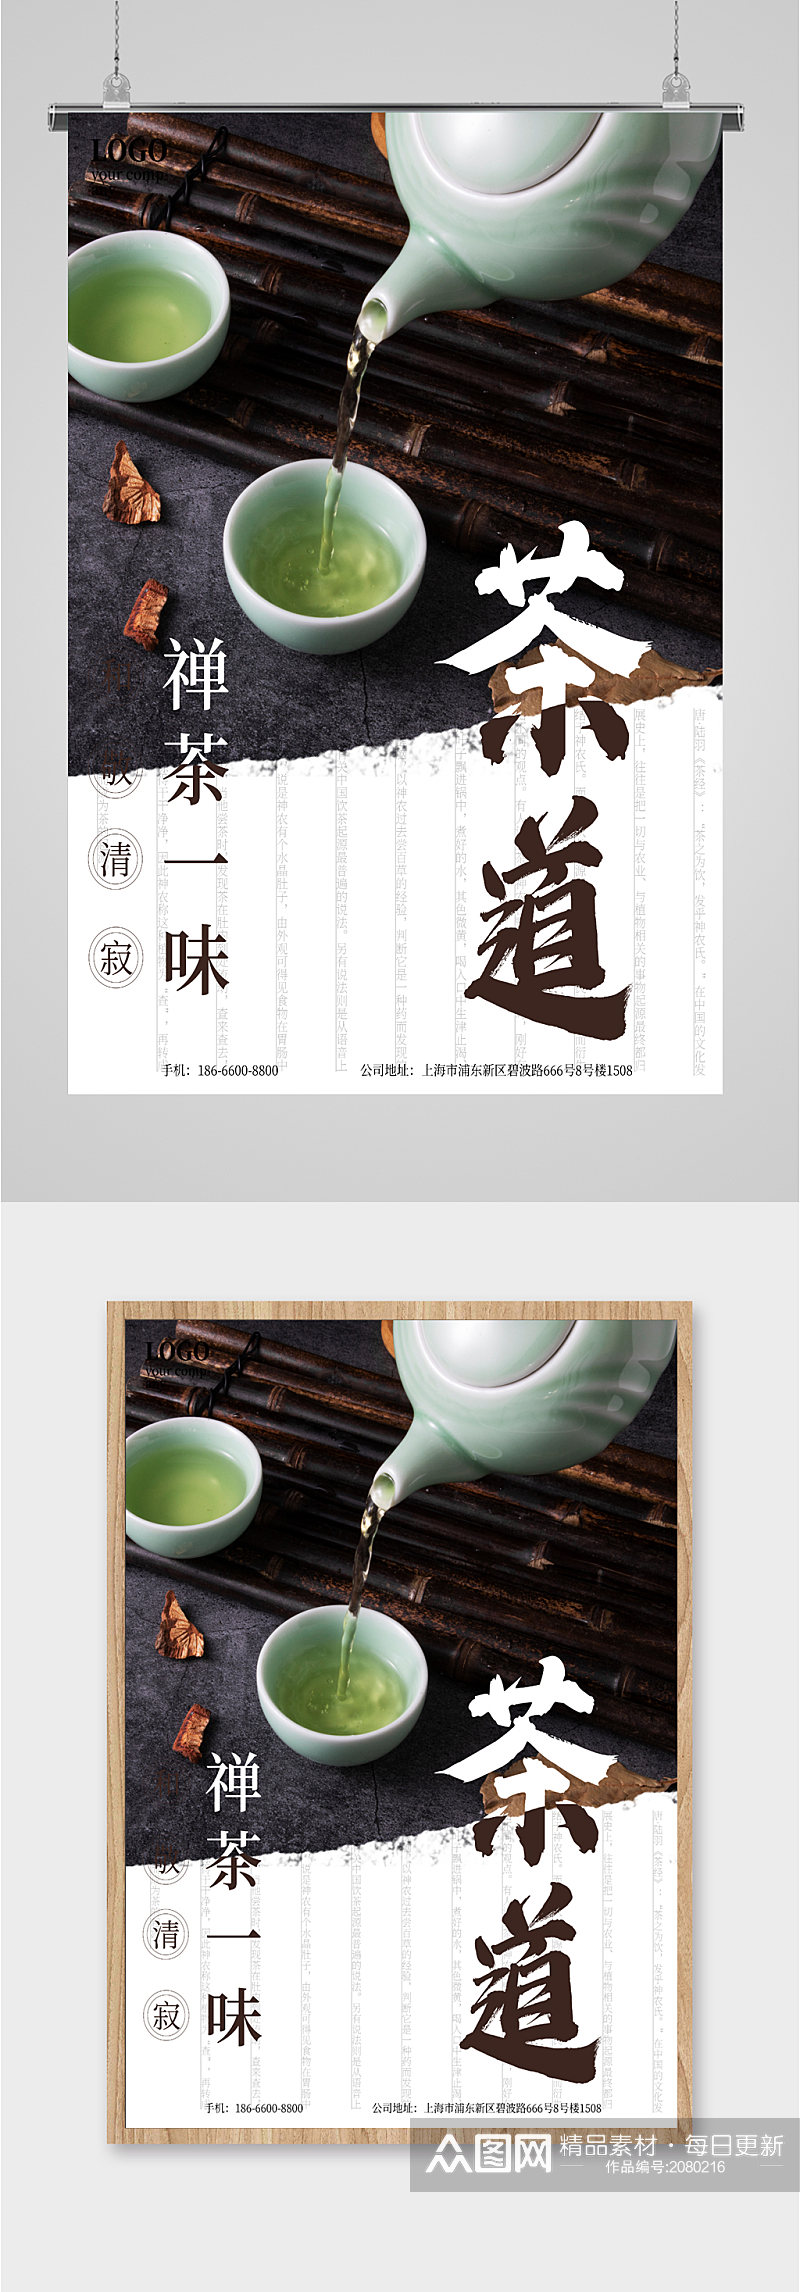 中国茶道茶艺海报素材